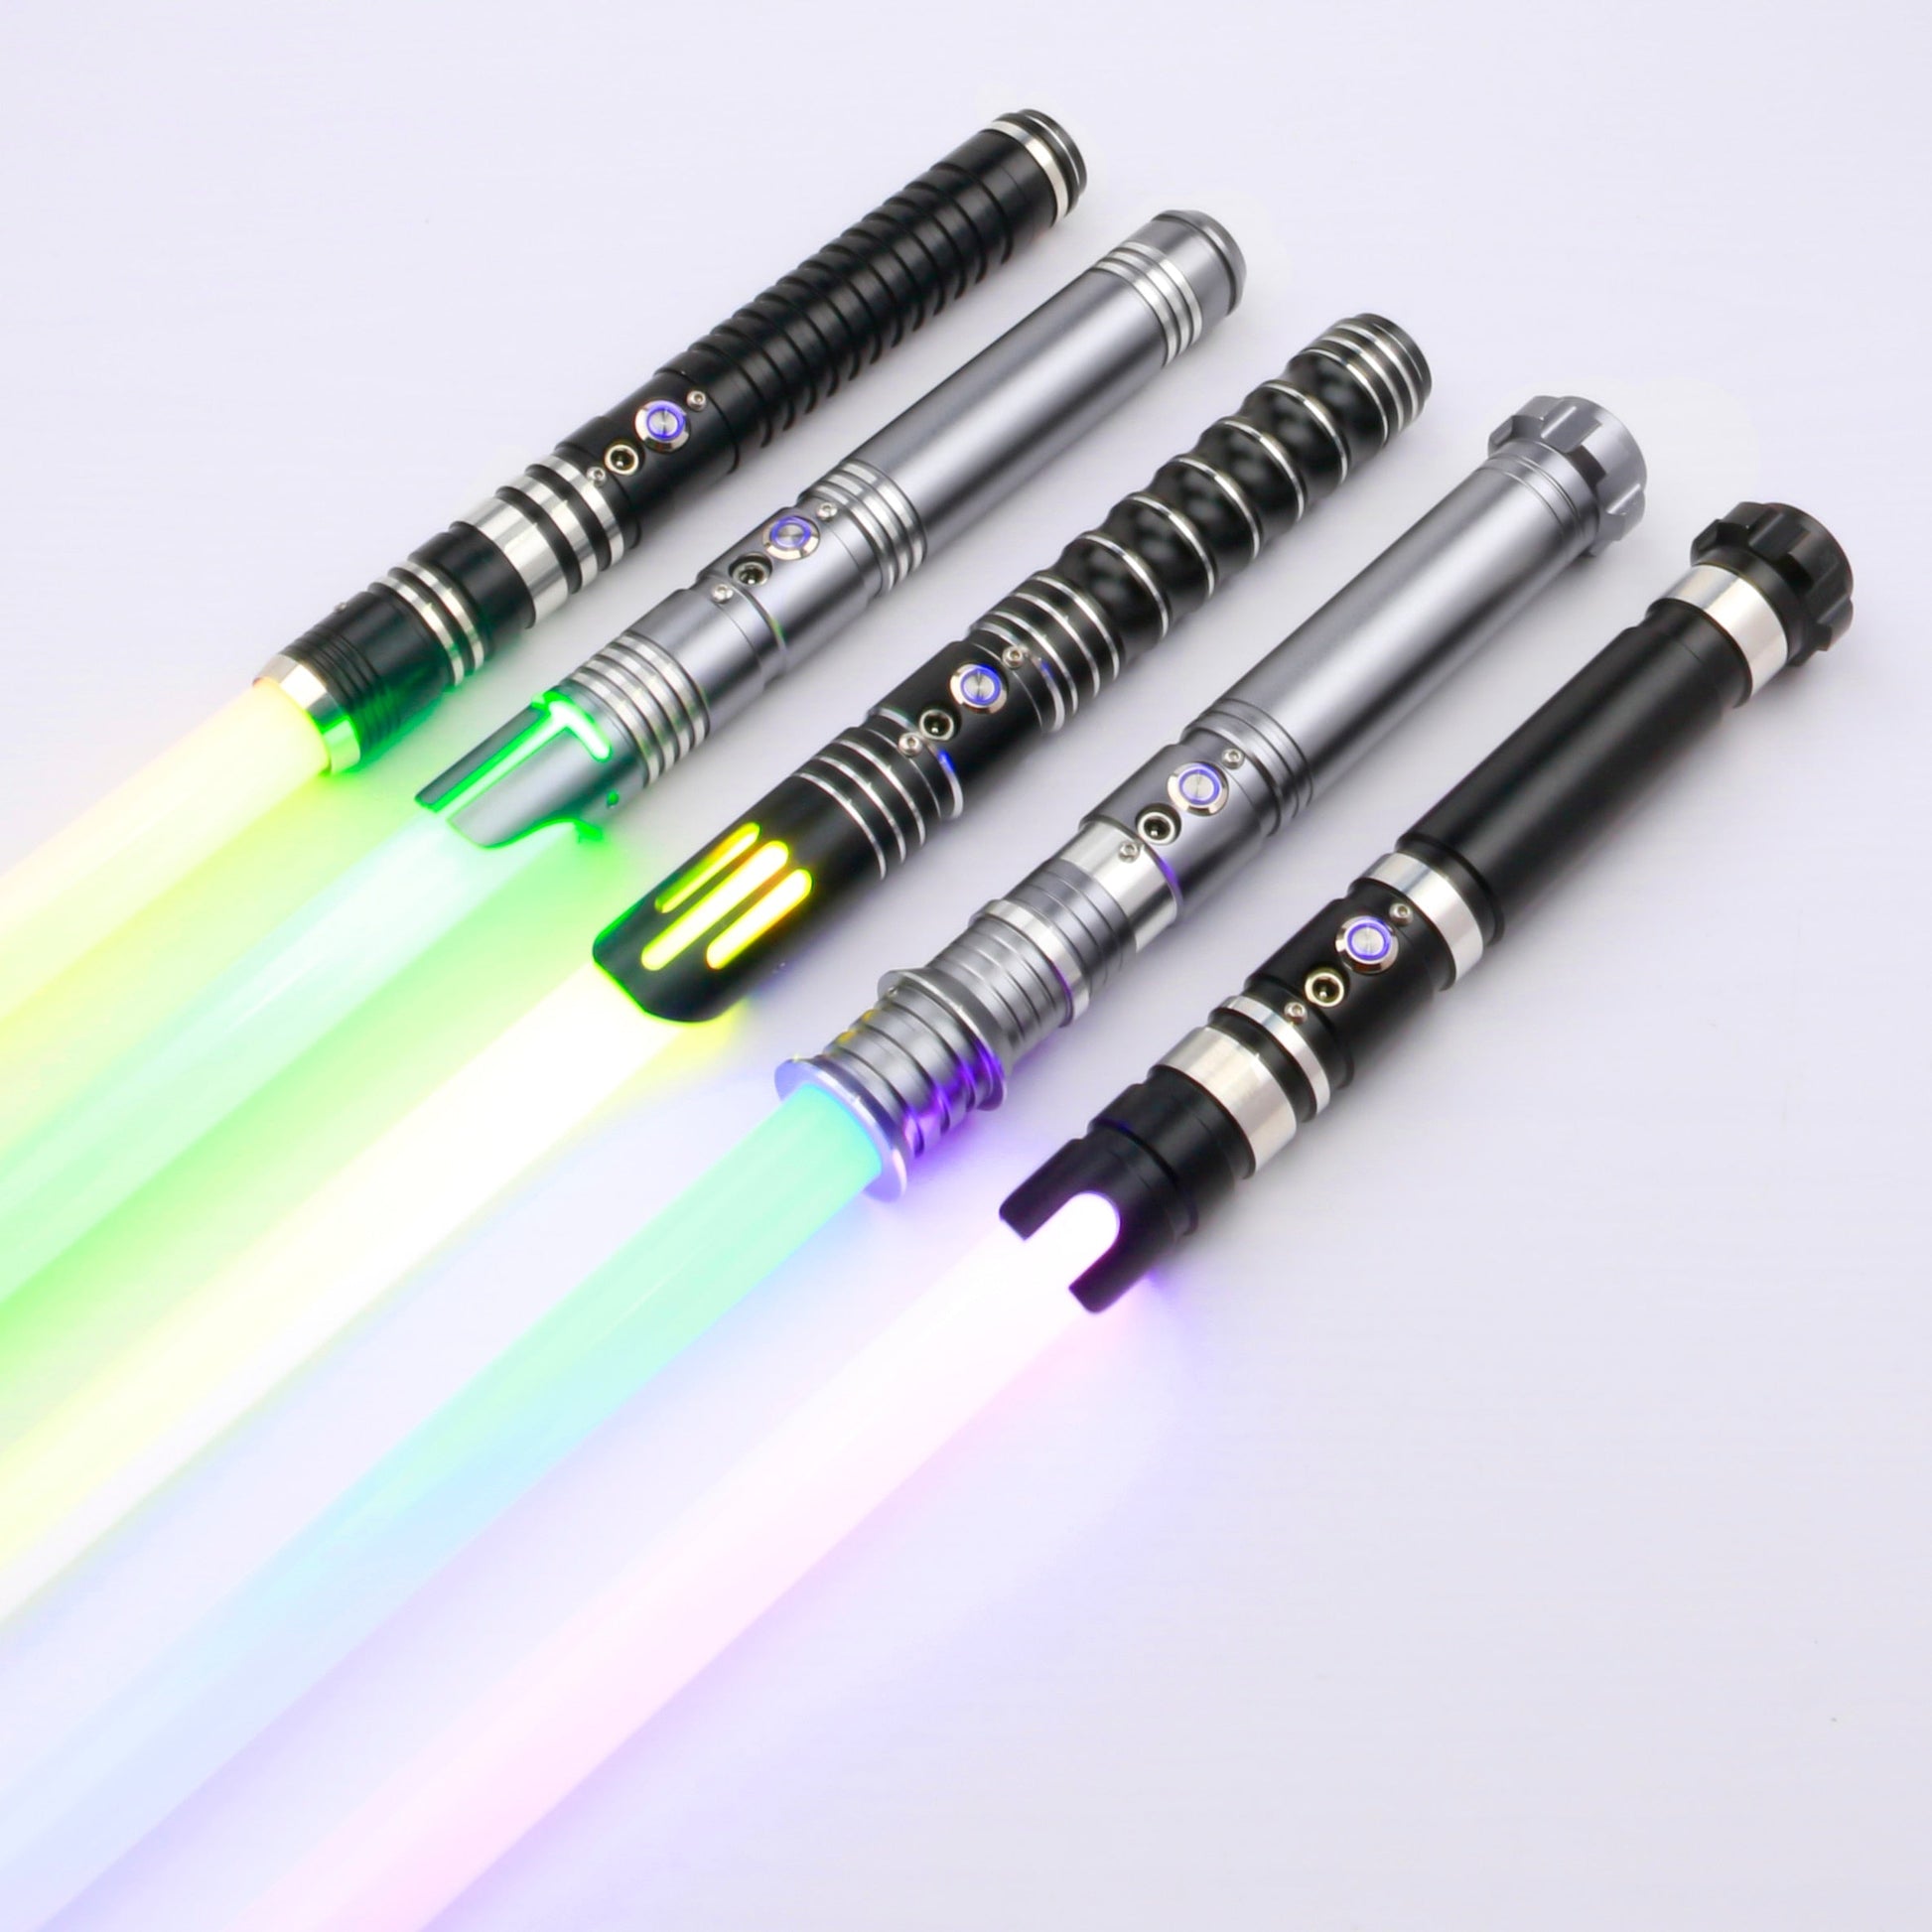 Lightsaber Heavy Dueling Metal Handle RGB 12 Colors Change 10 sets Soundfonts Force-Shalav5